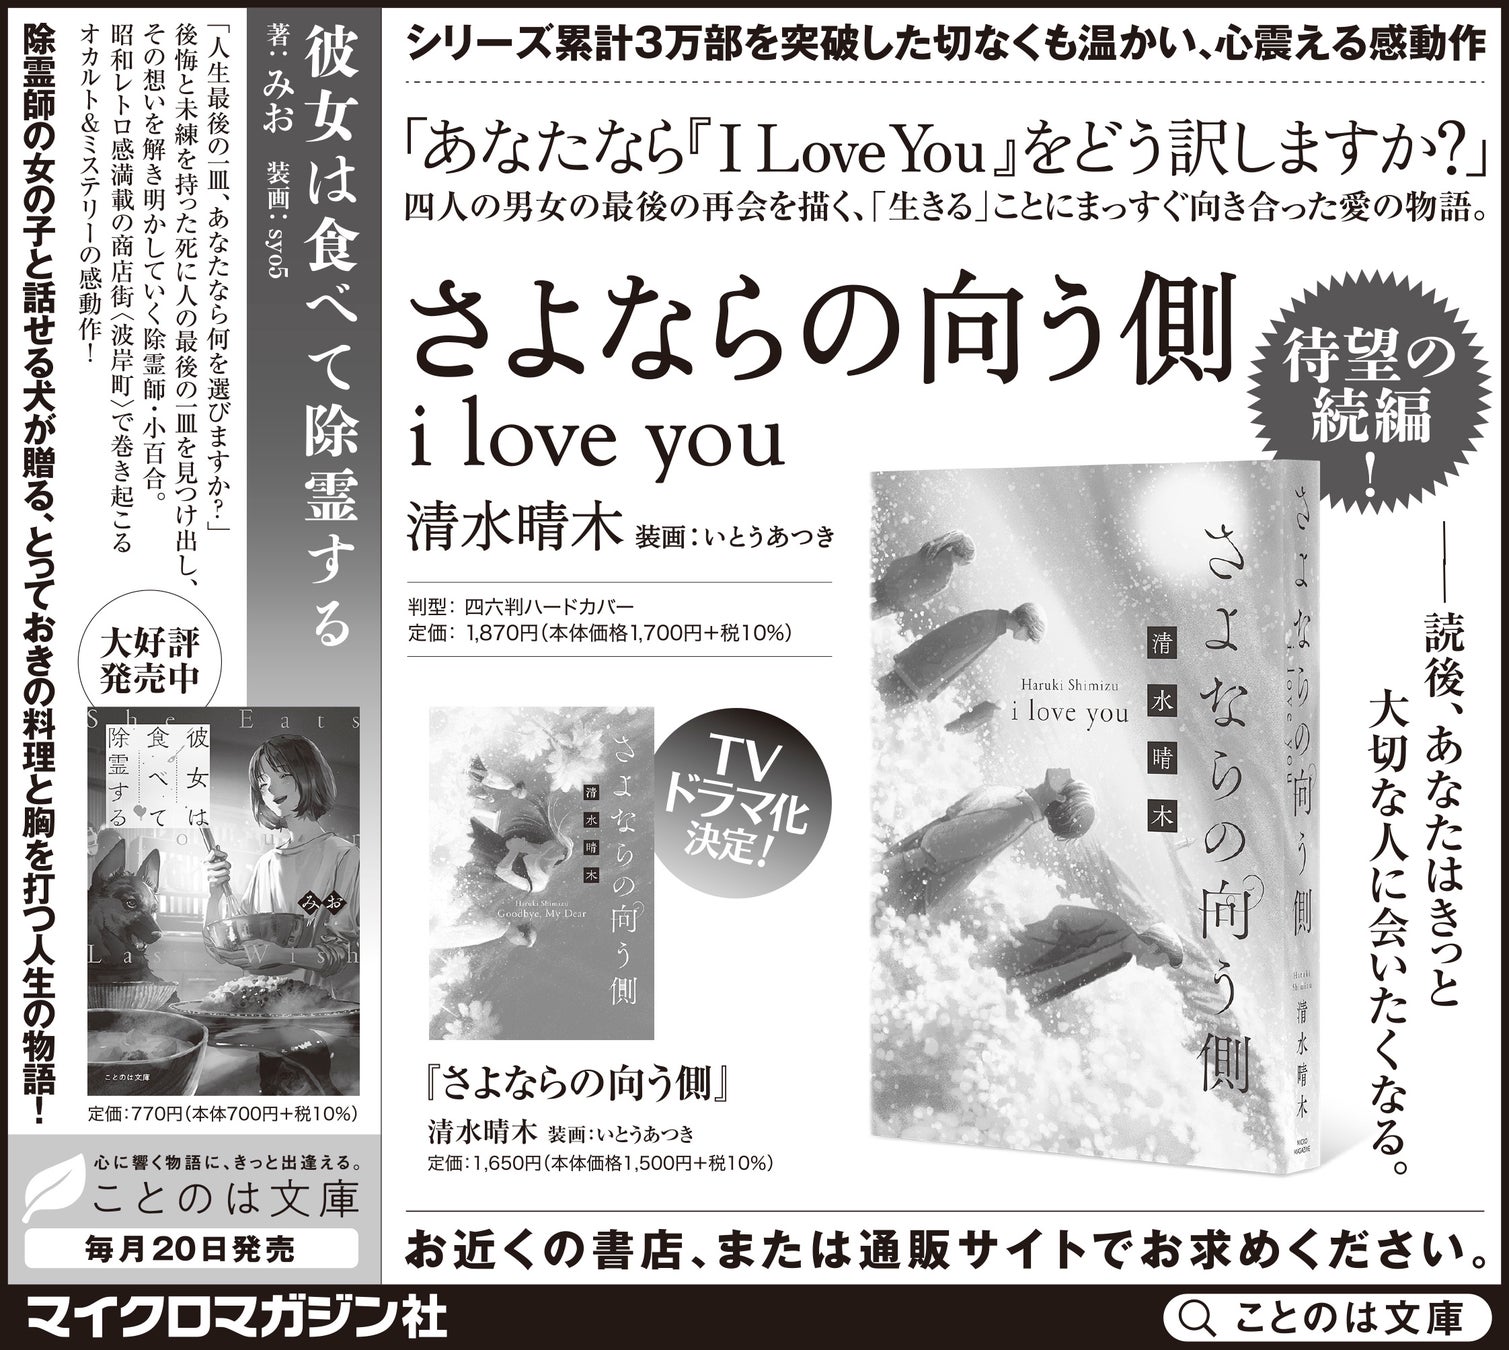 上川隆也主演のTVドラマ化が話題『さよならの向う側』『さよならの向う側 i love you』、オカルト＆ミステリーの感動作『彼女は食べて除霊する』を中日新聞・北陸中日新聞・東京新聞に掲載いたしました